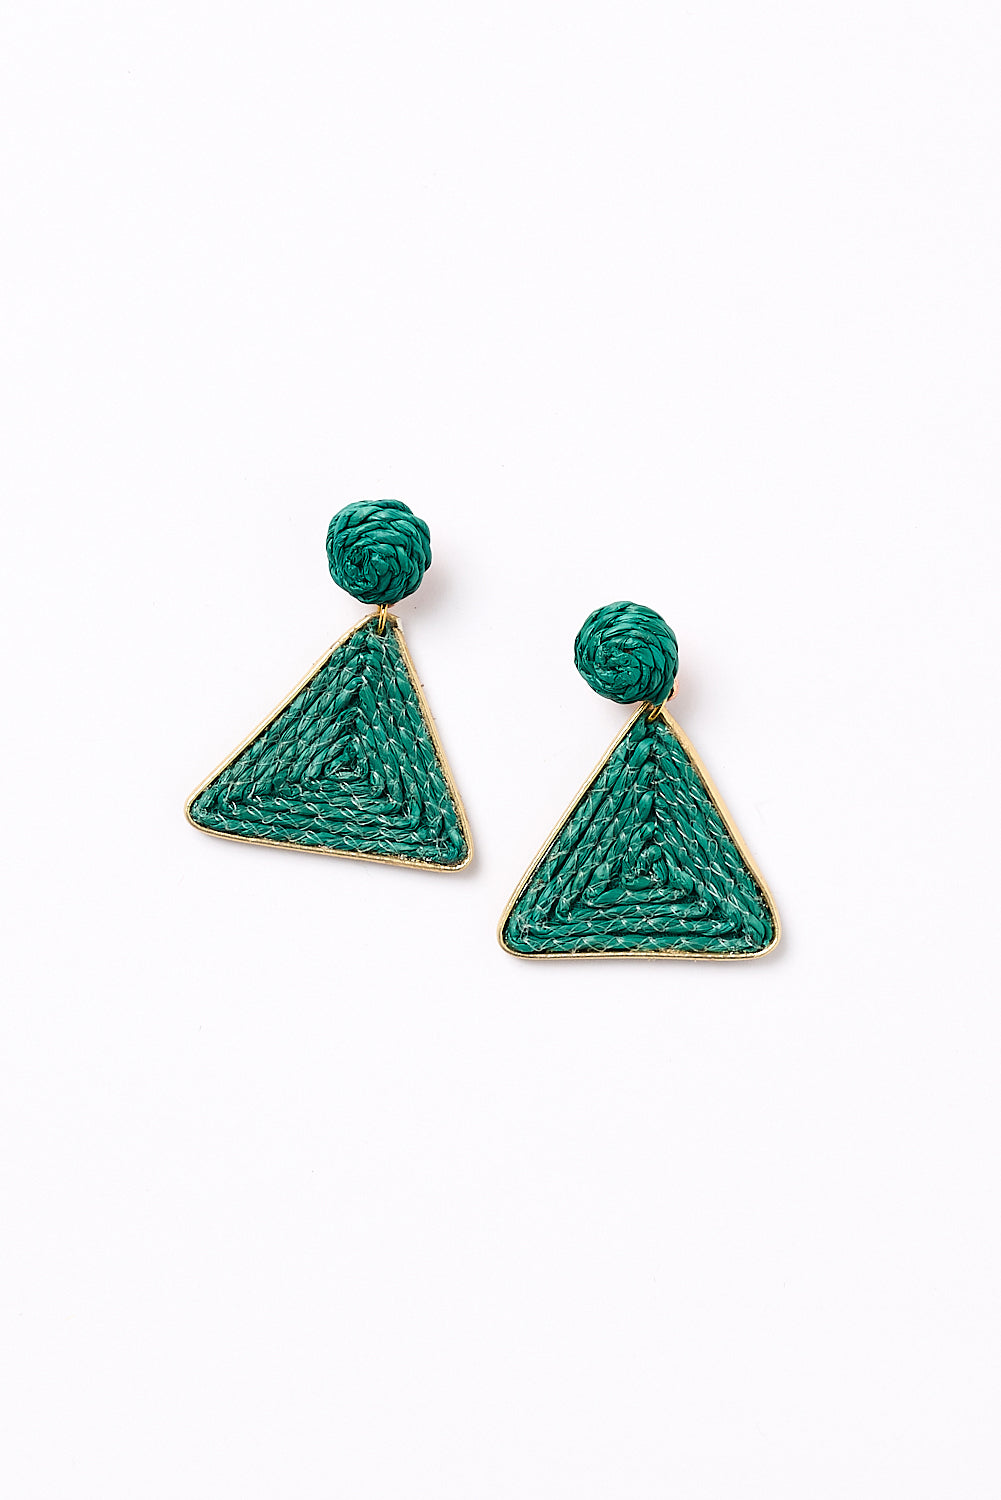 Woven Triangle Earrings in Green